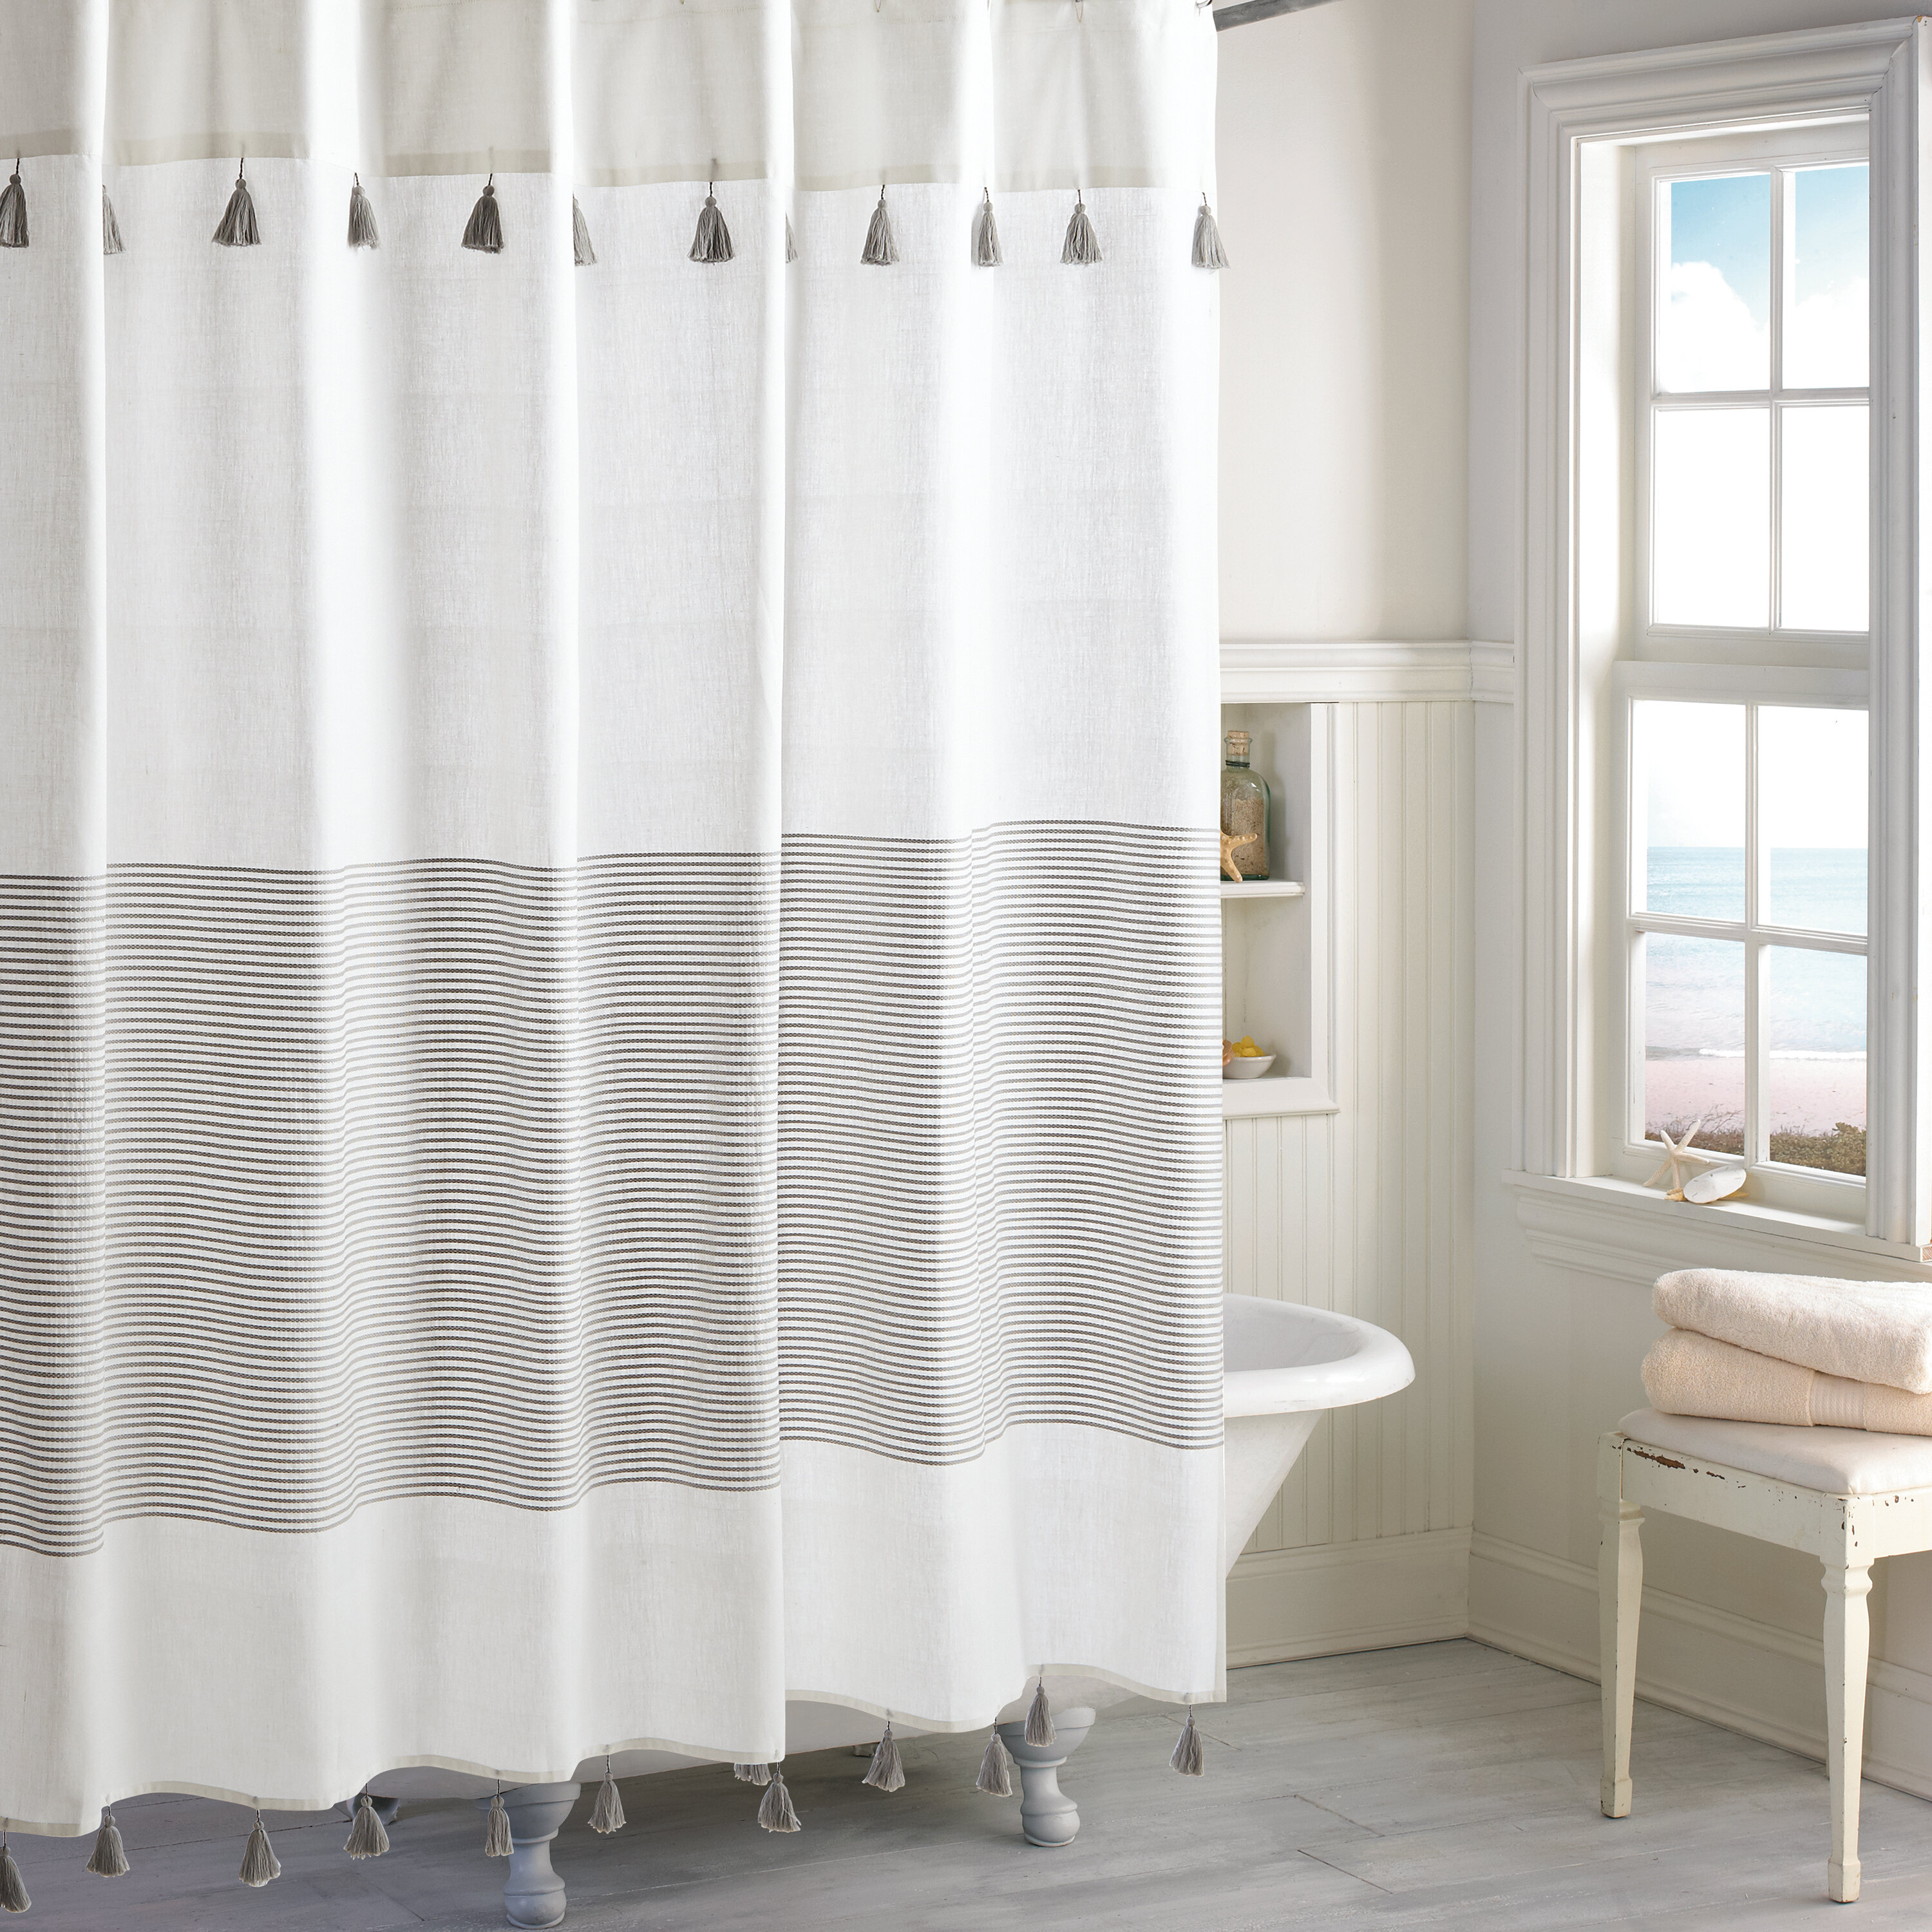 Gray %2526 Silver Campanella 100%2525 Cotton Striped Single Shower Curtain 